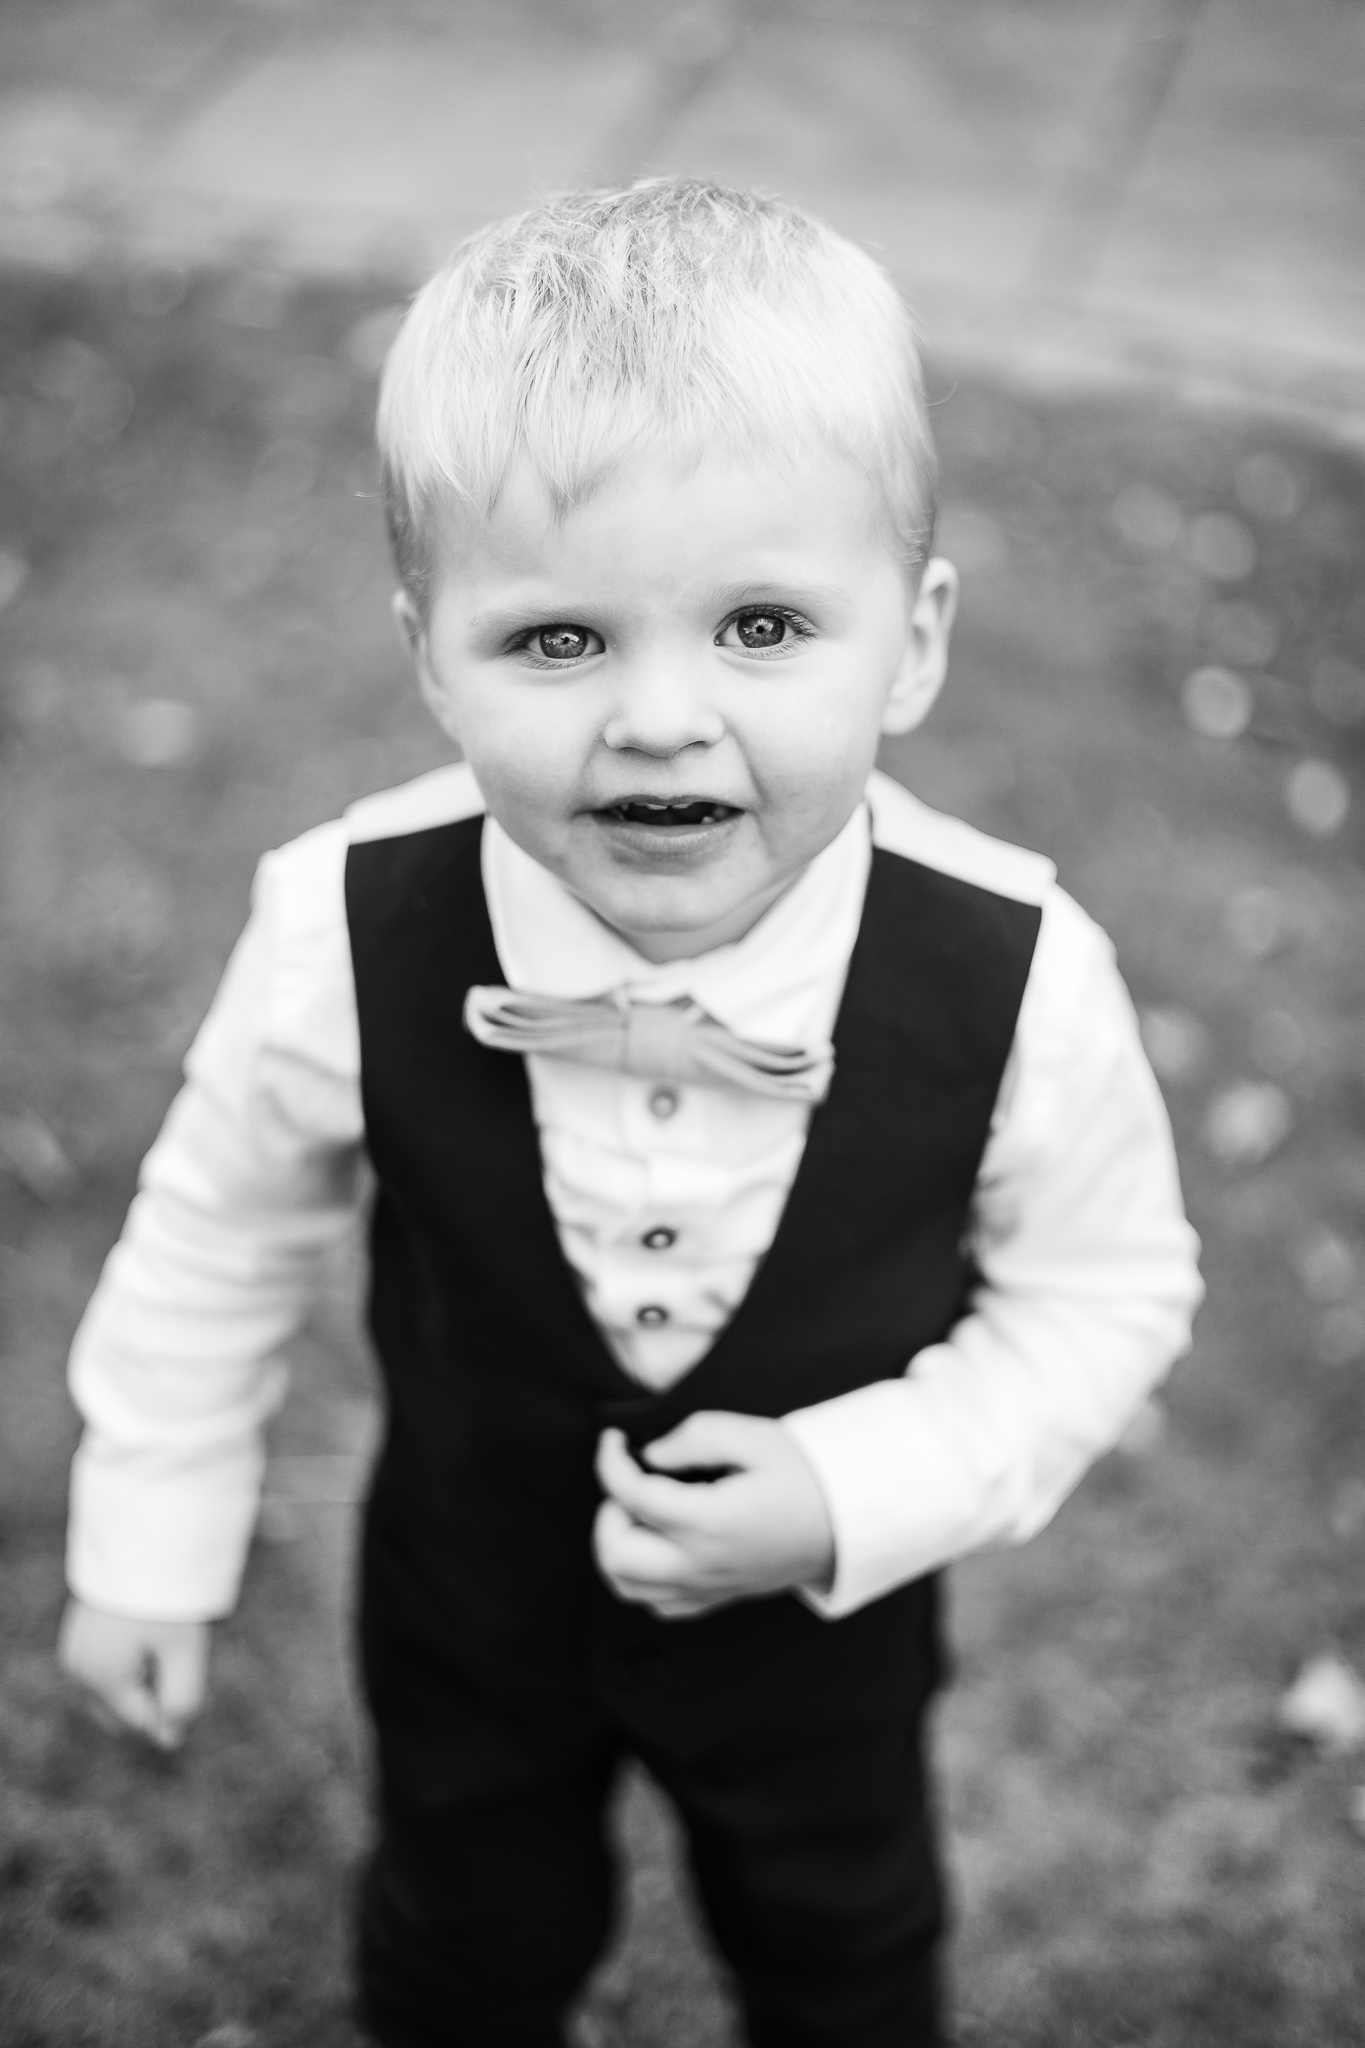 Cute kid at a wedding 